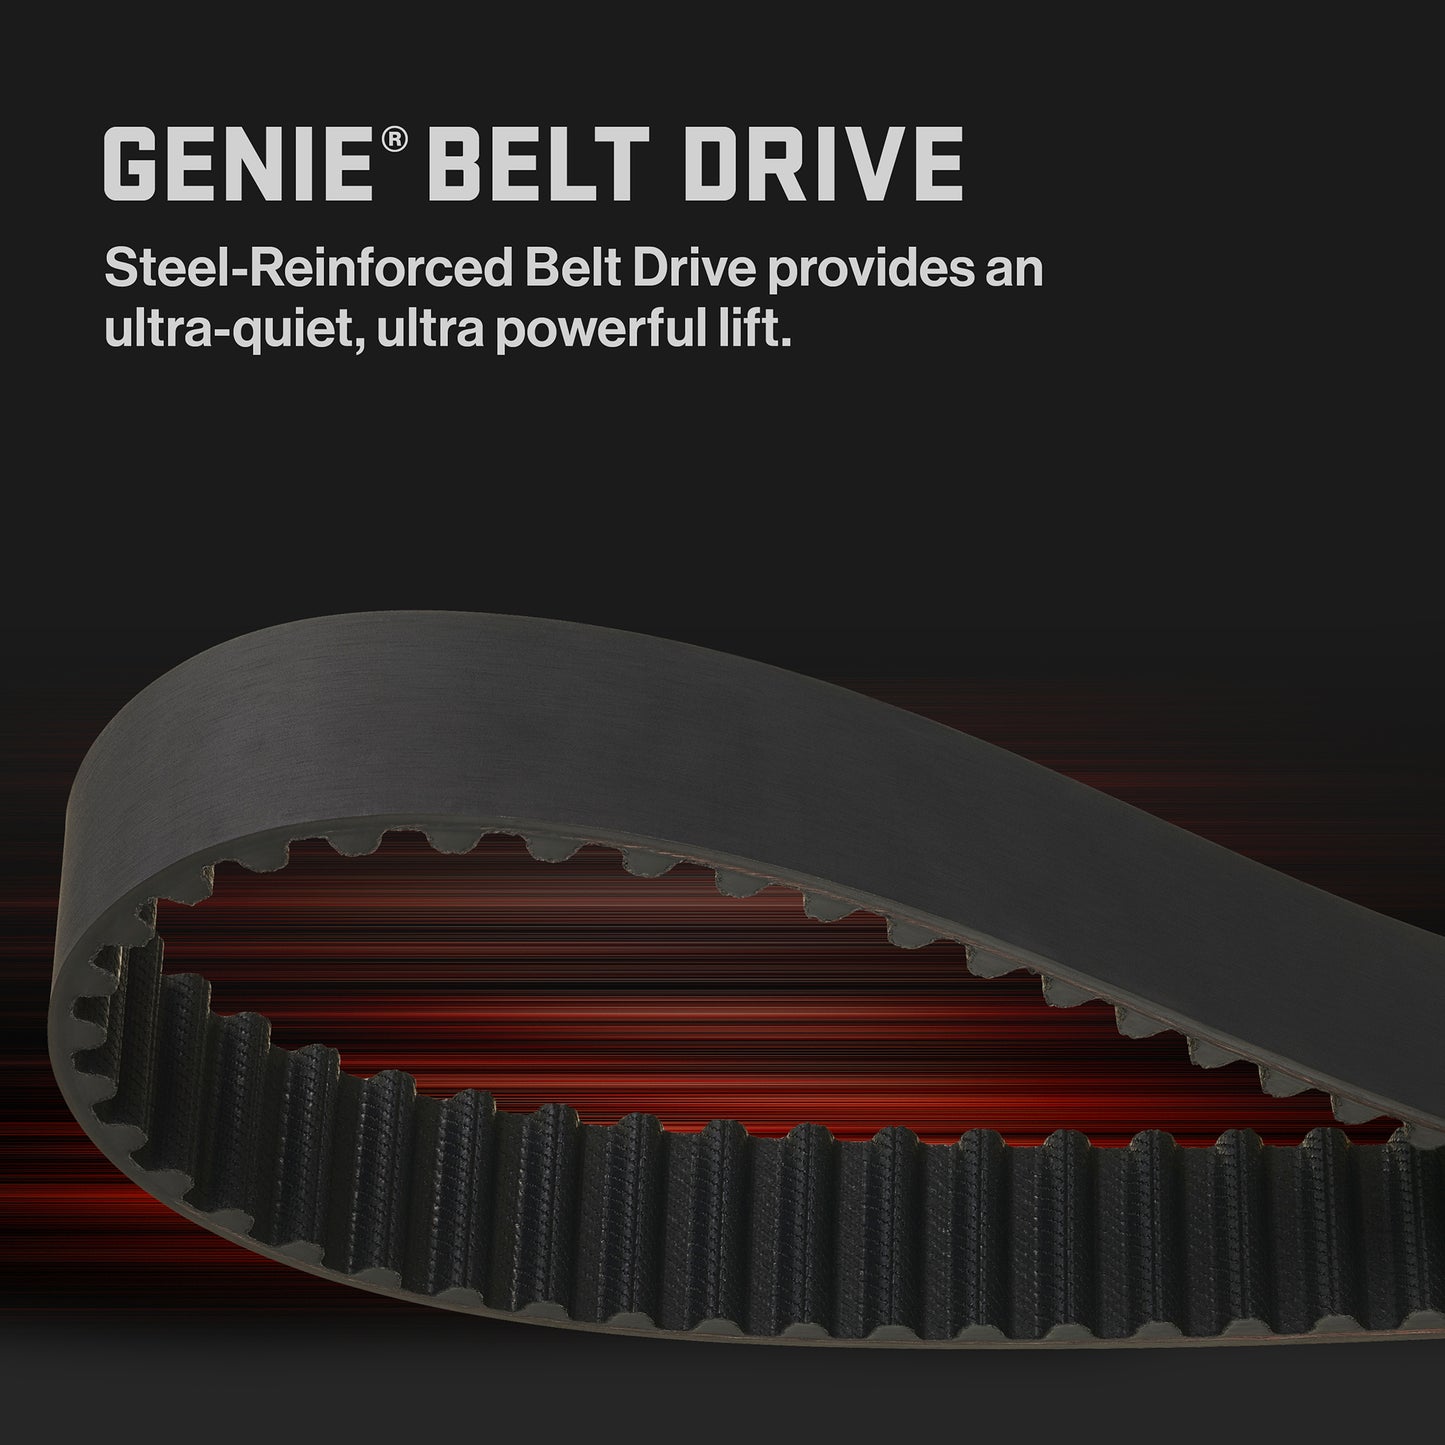 Ultra Quiet Belt - Genie StealthDrive 750 Garage Door Opener with Battery BackUp